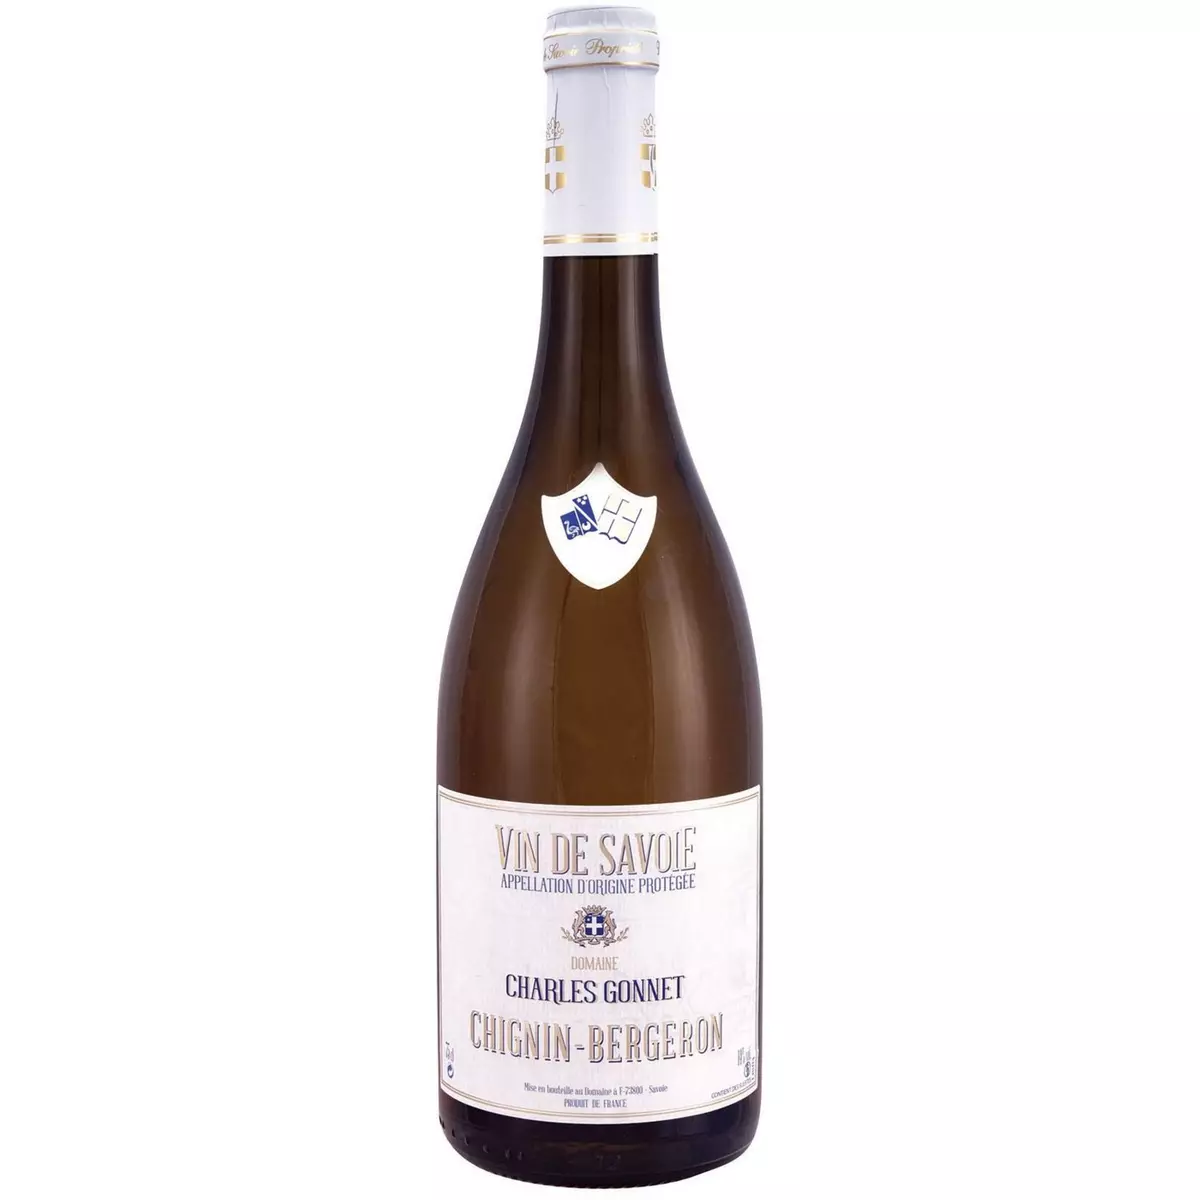 ADRIEN VACHER AOP Vin de Savoie Chignin Bergeron Domaine Charles Gonnet blanc 75cl